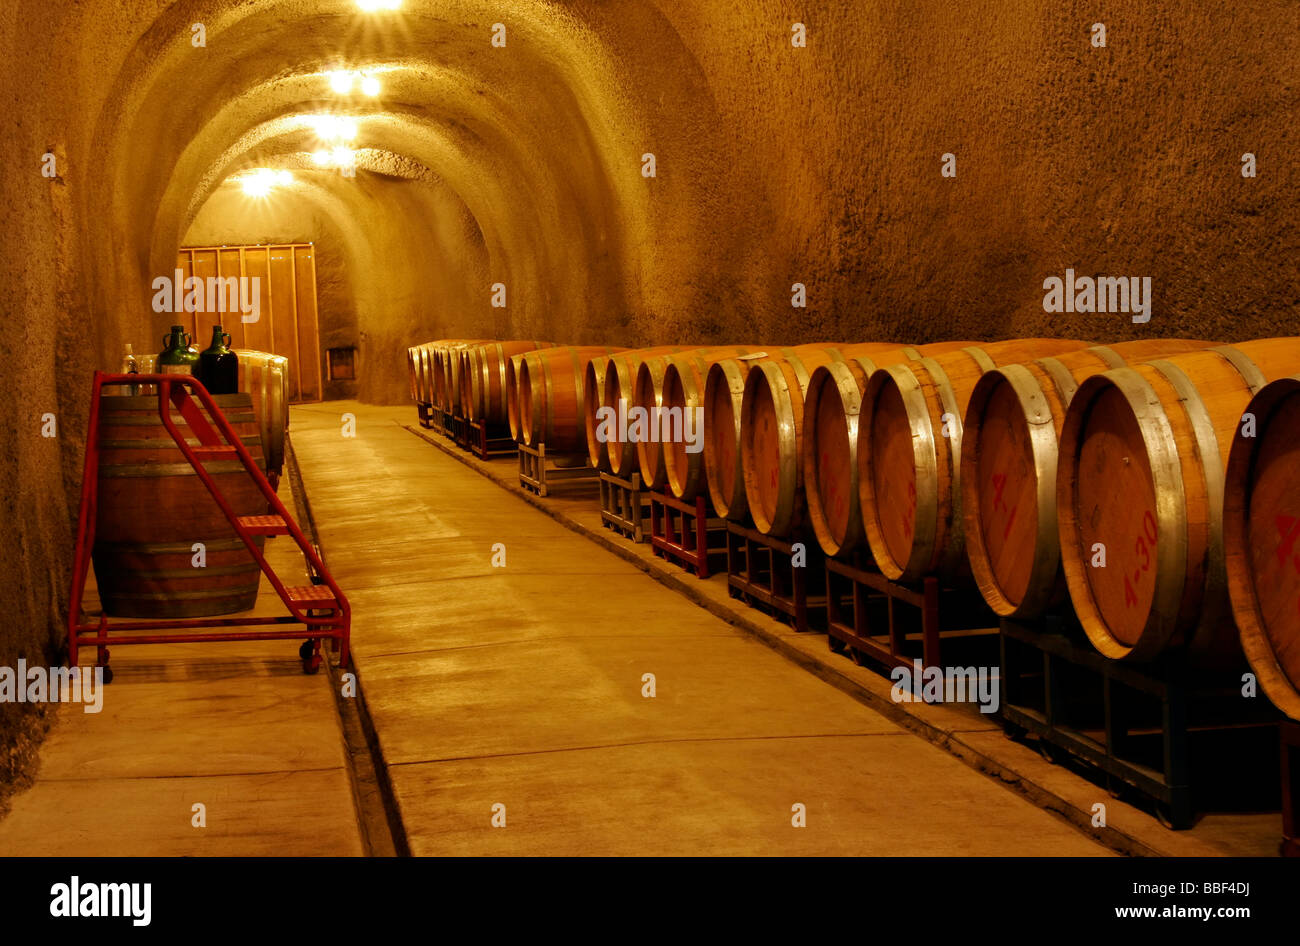 Barils de vin en fermentation dans une cave à vin Banque D'Images